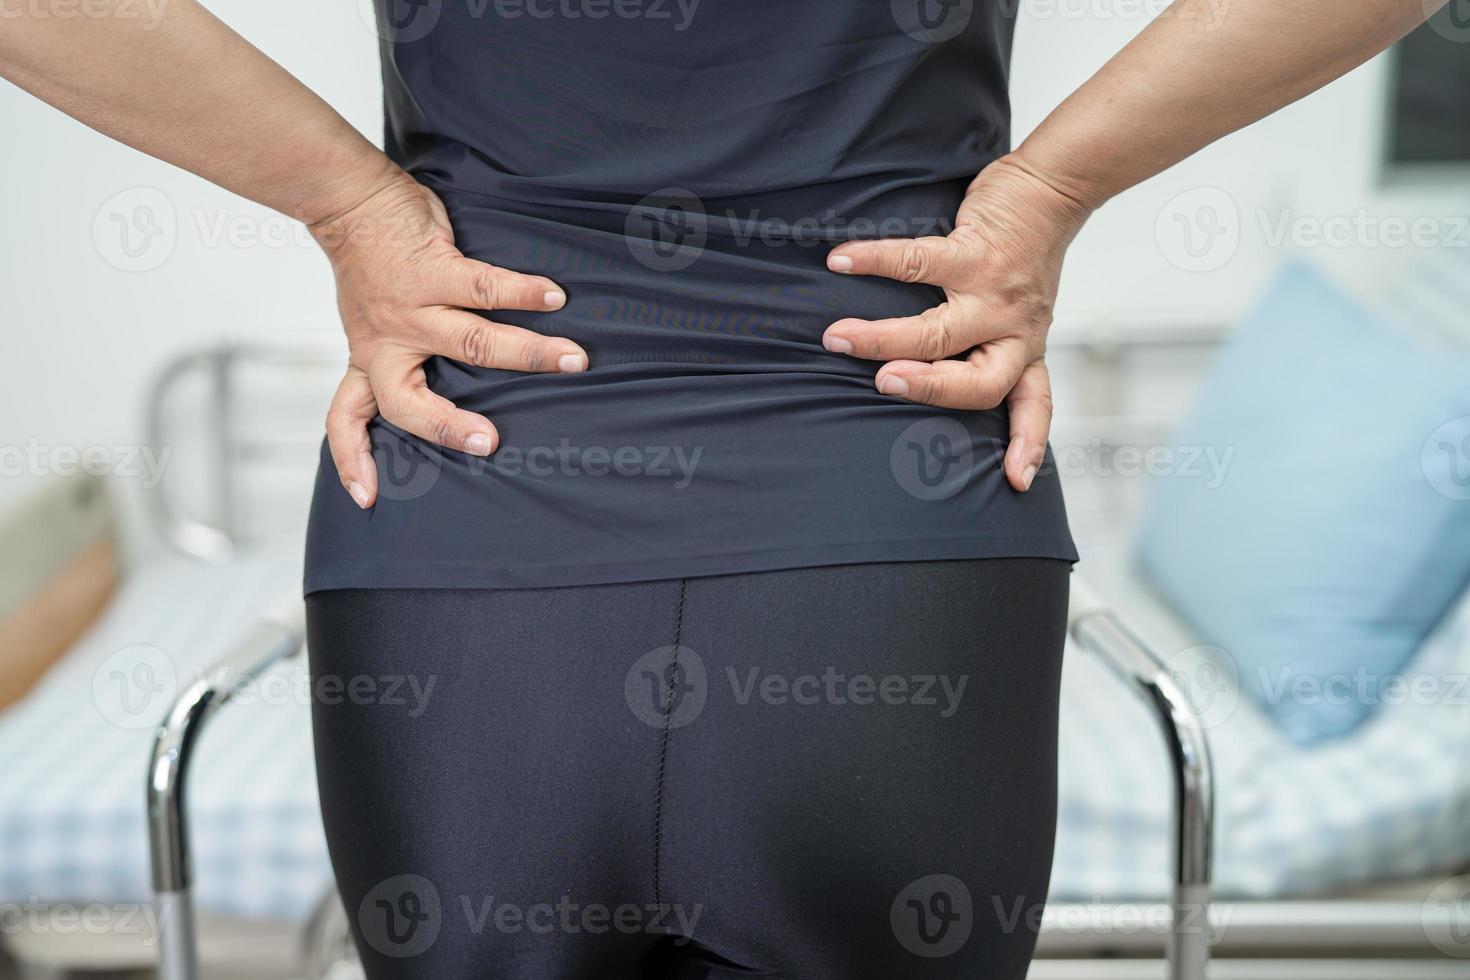 asiatische Patientin schmerzt Rücken, Taille und orthopädische Lendenwirbelsäule mit Gehhilfe. foto